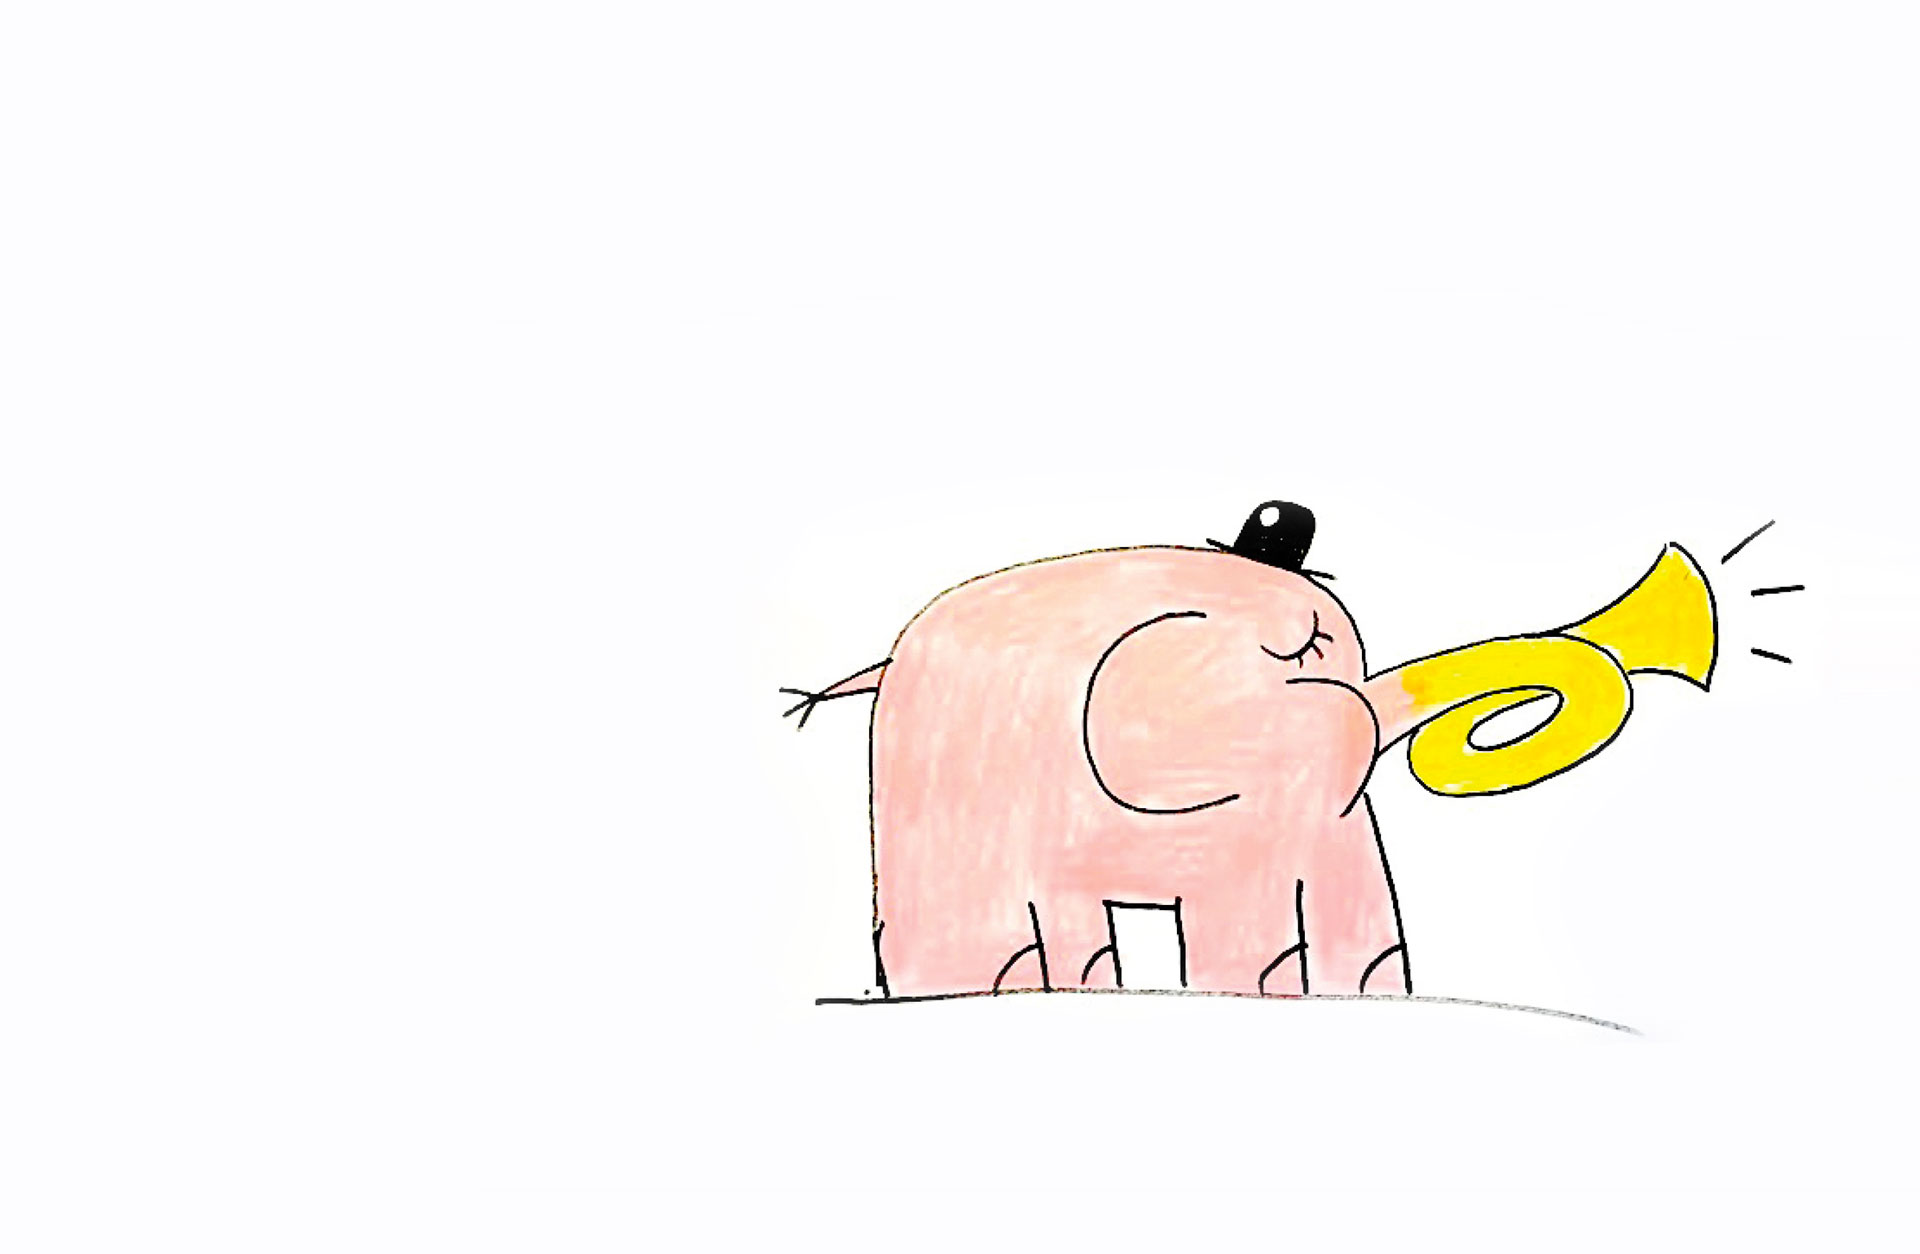 En rosa tecknad elefant med en liten svart hatt påhuvudet blåser i ett gult horn. Bild av Owe Gustafsson .